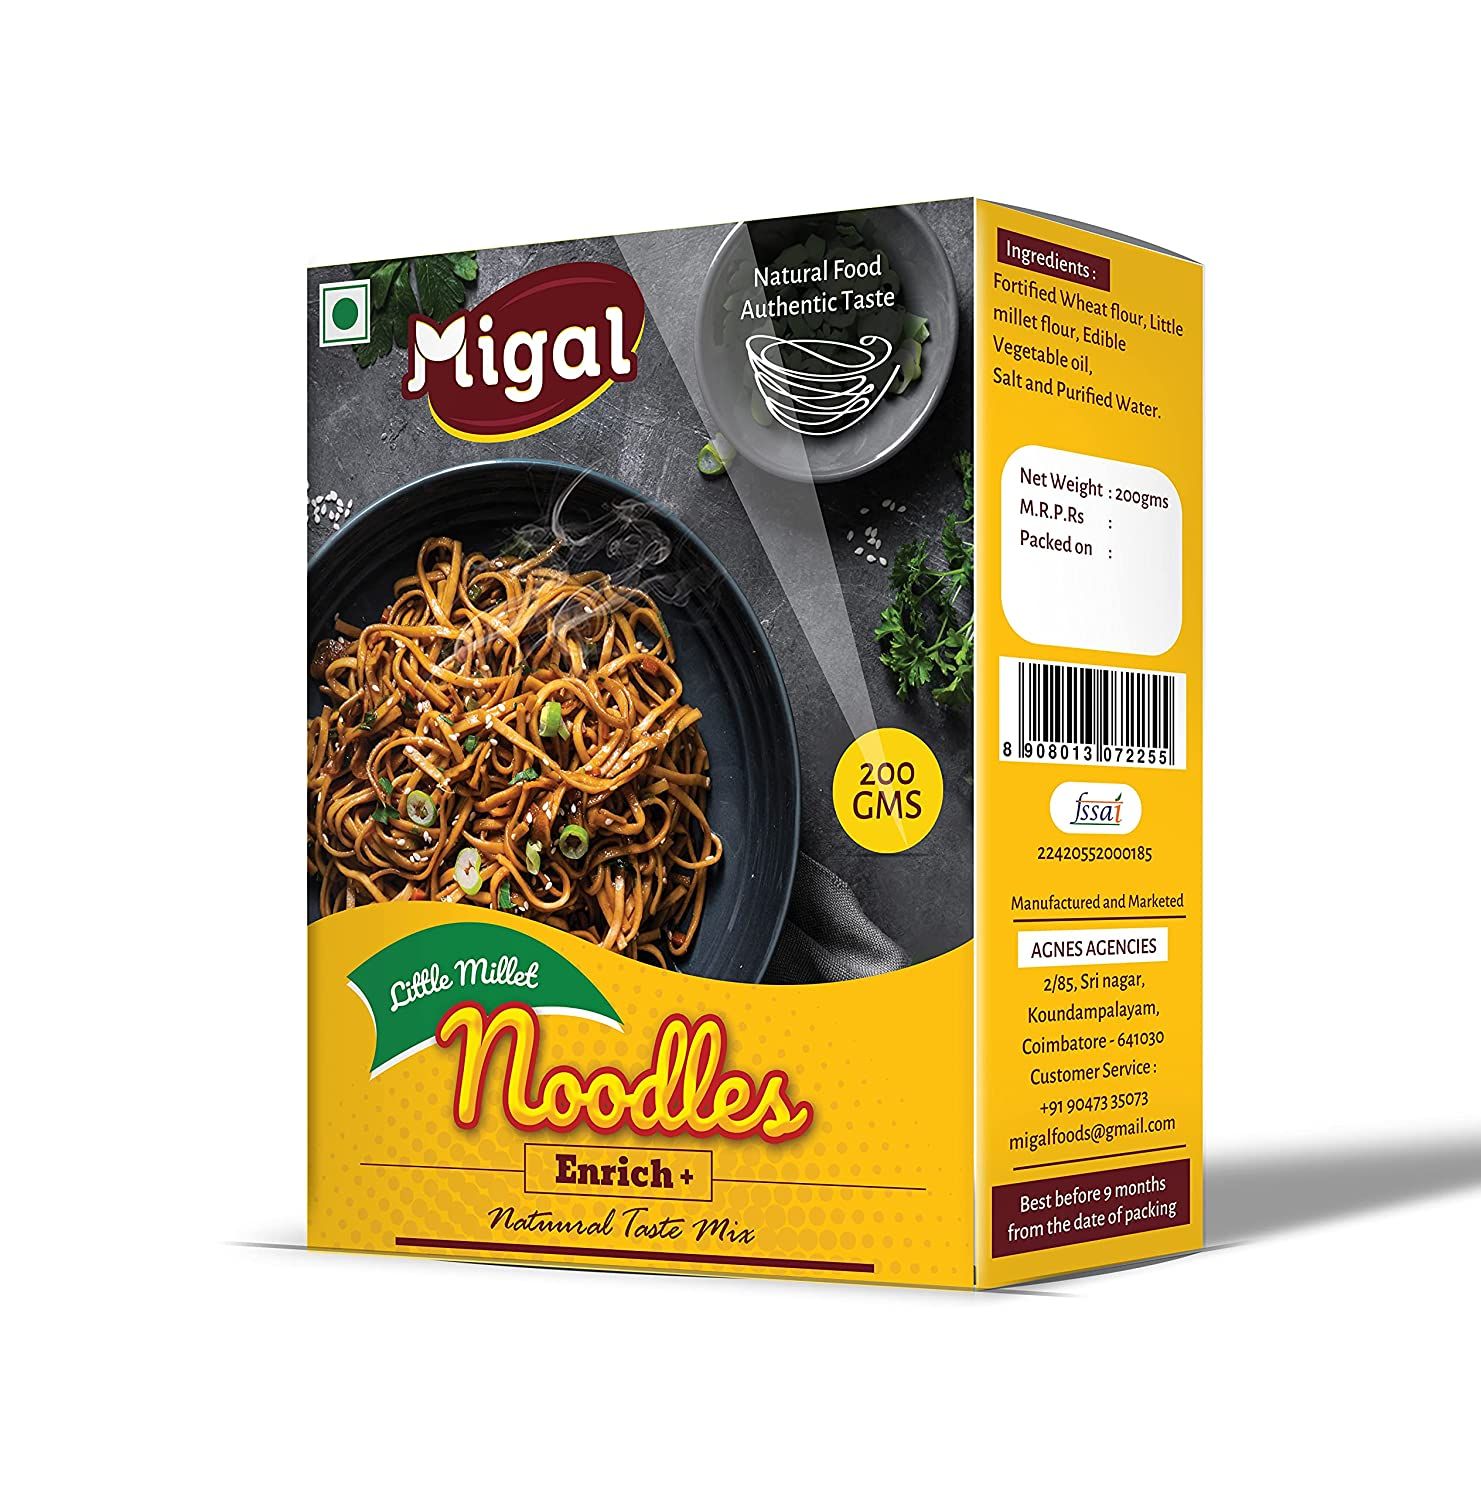 Migal Little Millet Noodles Image